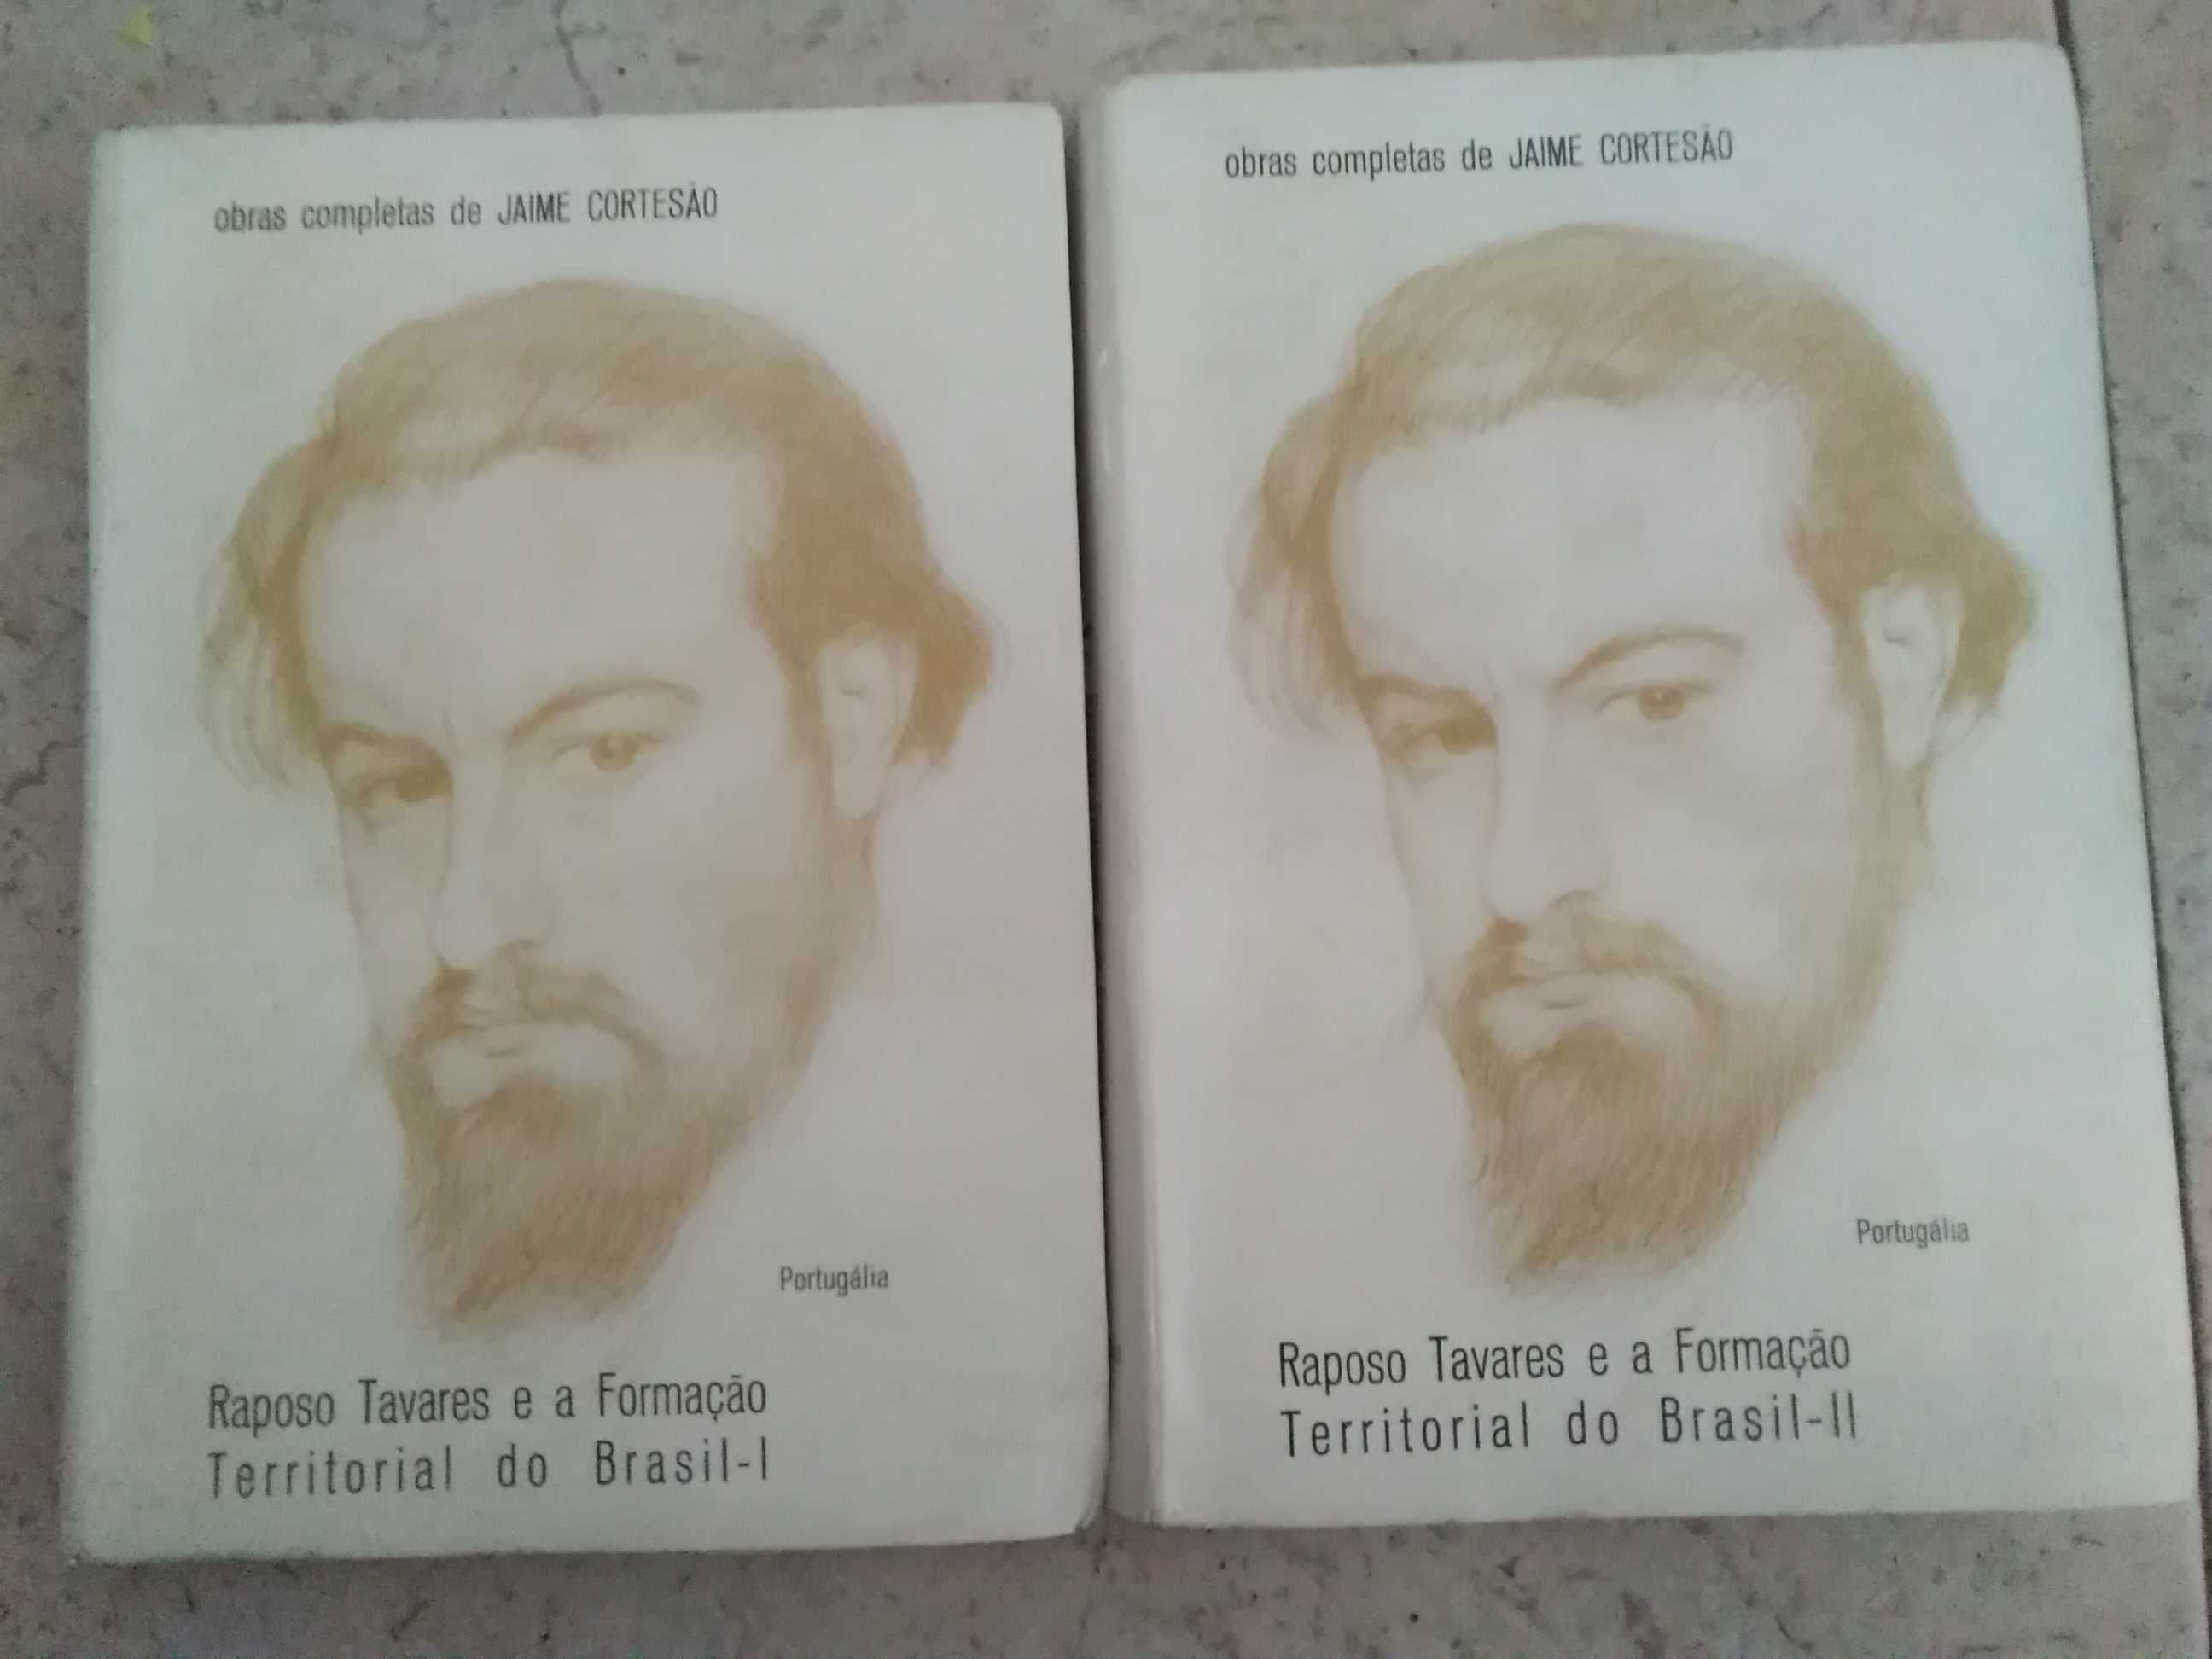 Raposo Tavares e a Formação Territorial do Brasil